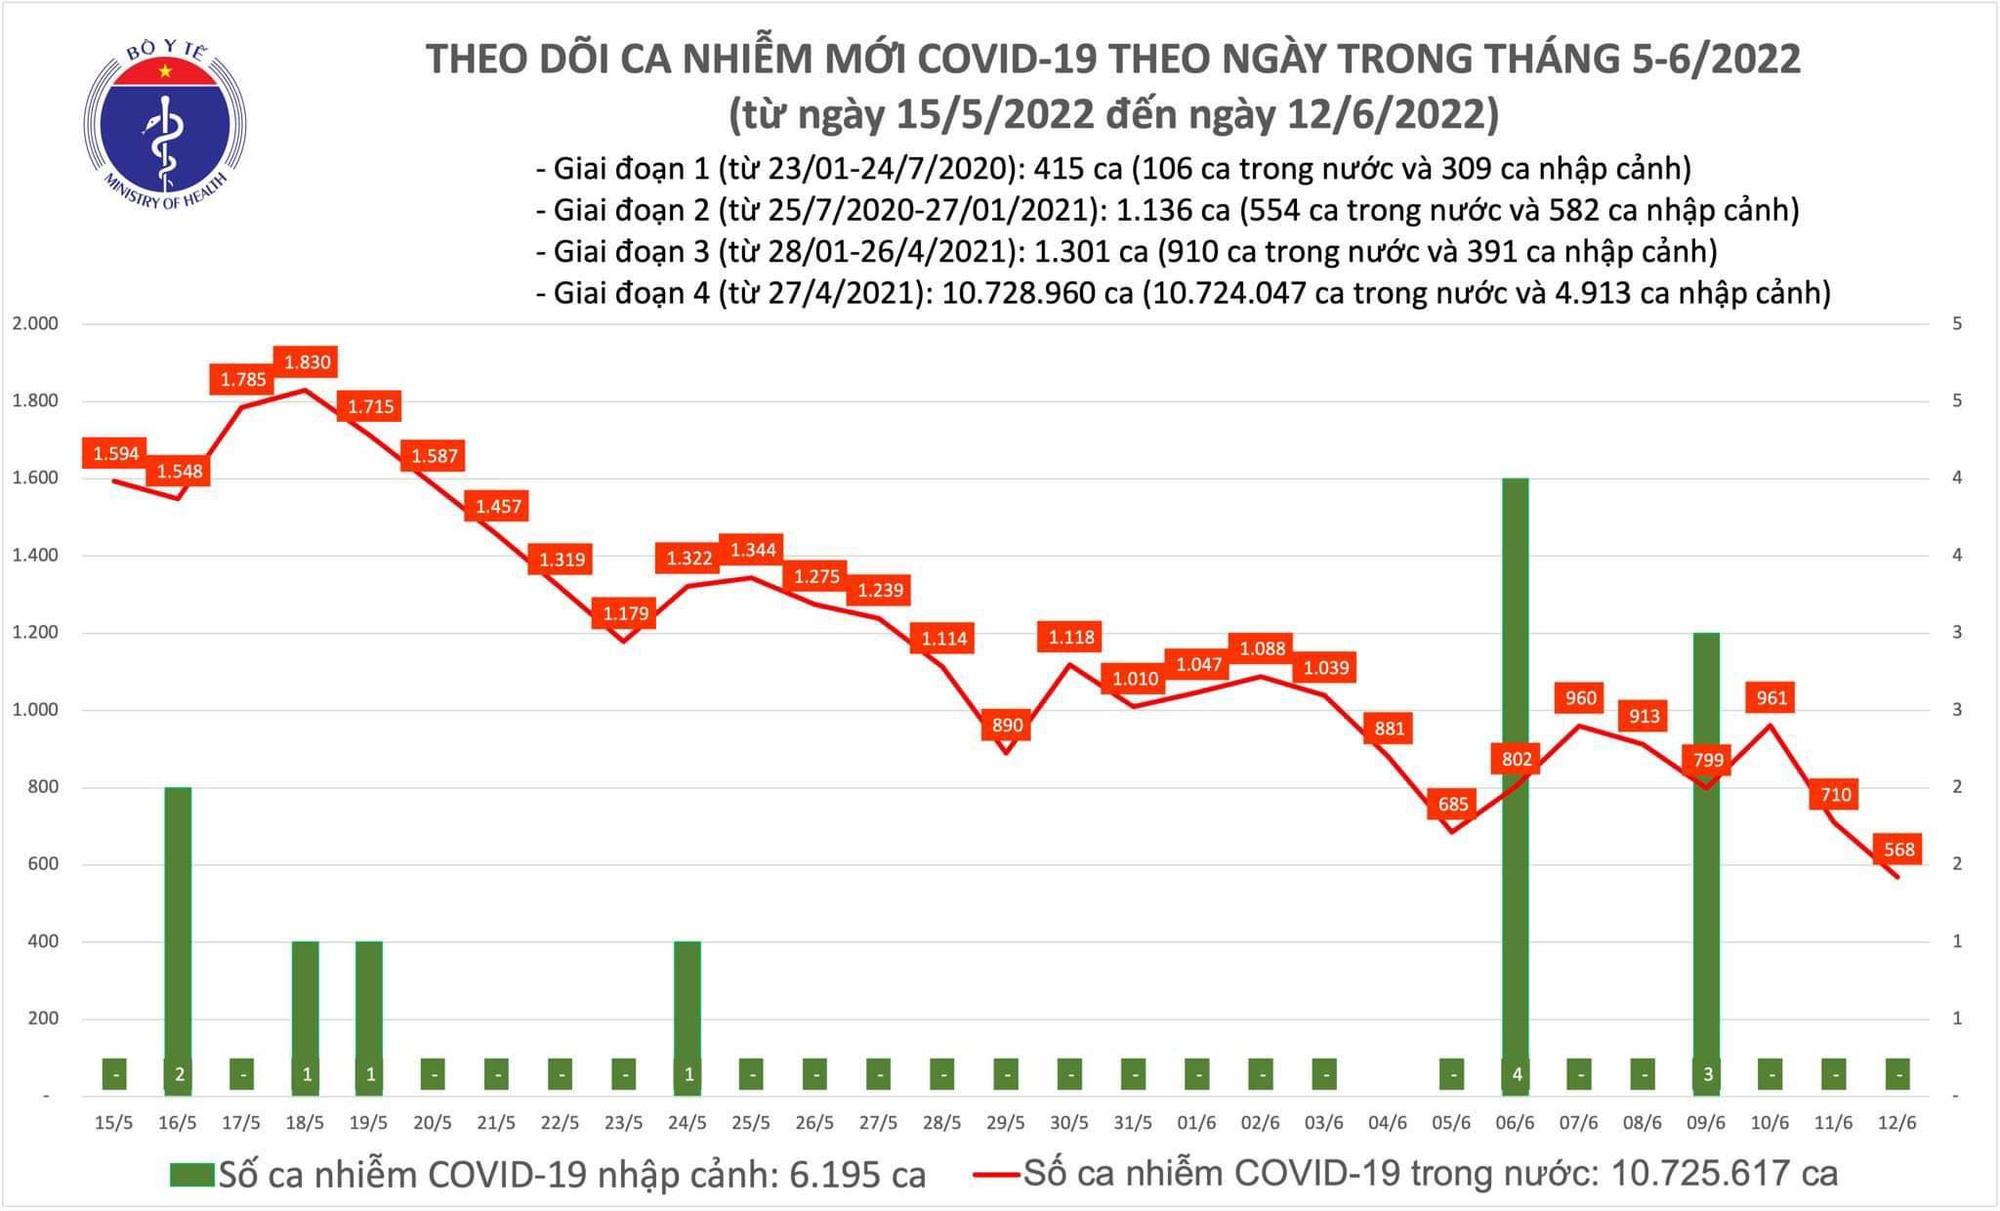 Ngày 12/6: Có 568 ca COVID-19, thấp nhất gần 12 tháng qua; Không có F0 tử vong - Ảnh 1.